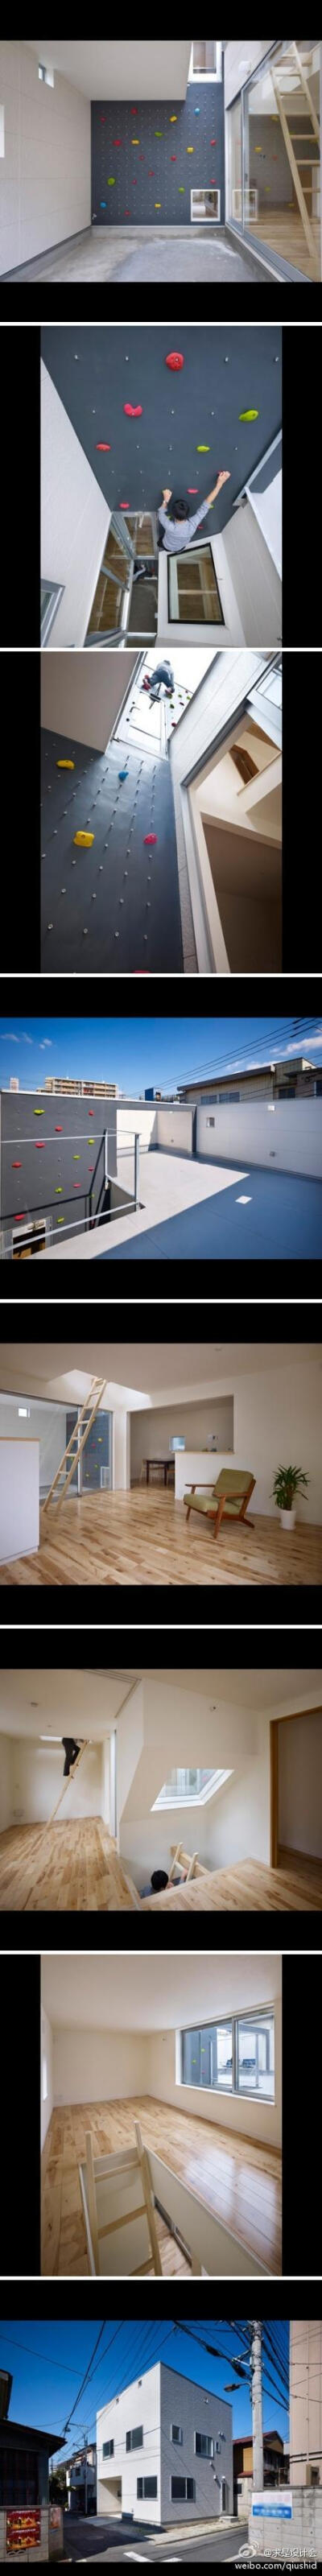 攀岩房子，整个房子有一个7米高的攀岩墙和梯子，有设置护栏，位于日本东京的一个郊区，是一个名叫3way House的工作室的作品，这样的设计为人们创造了一个丰富生活的空间，增进家庭气氛，没事爬着玩。